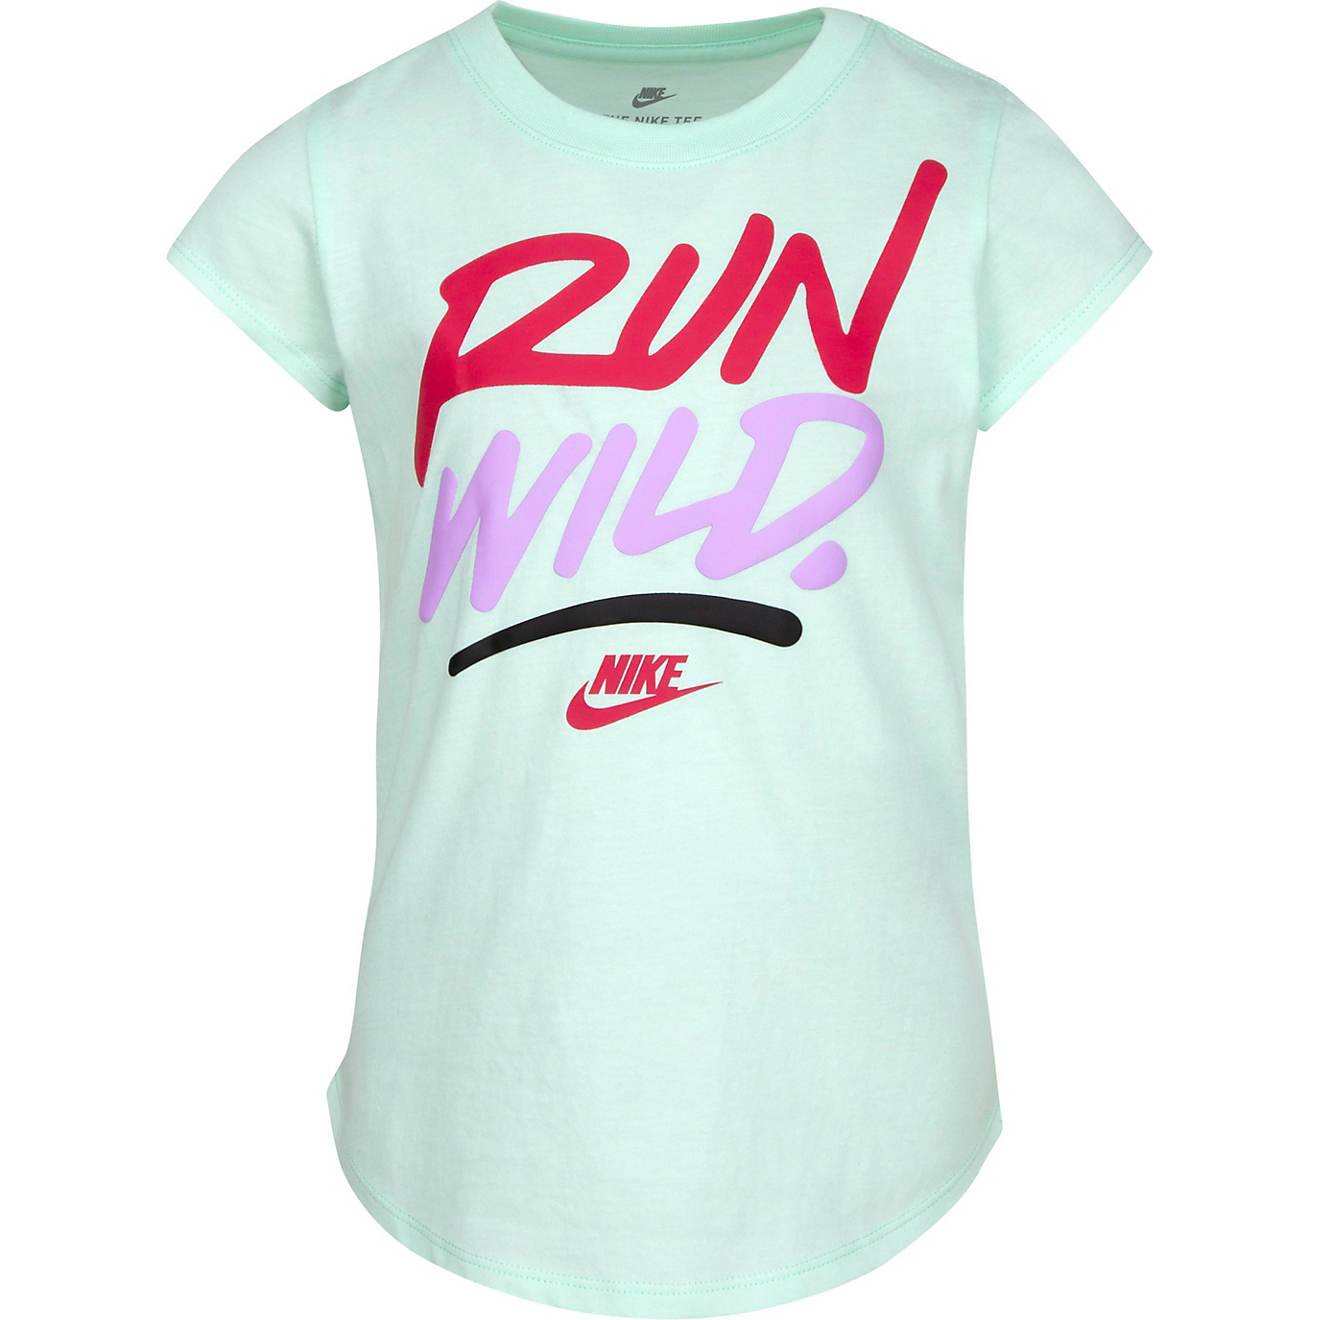 Nike Girls' Run Wild Graphic T-shirt                                                                                             - view number 1